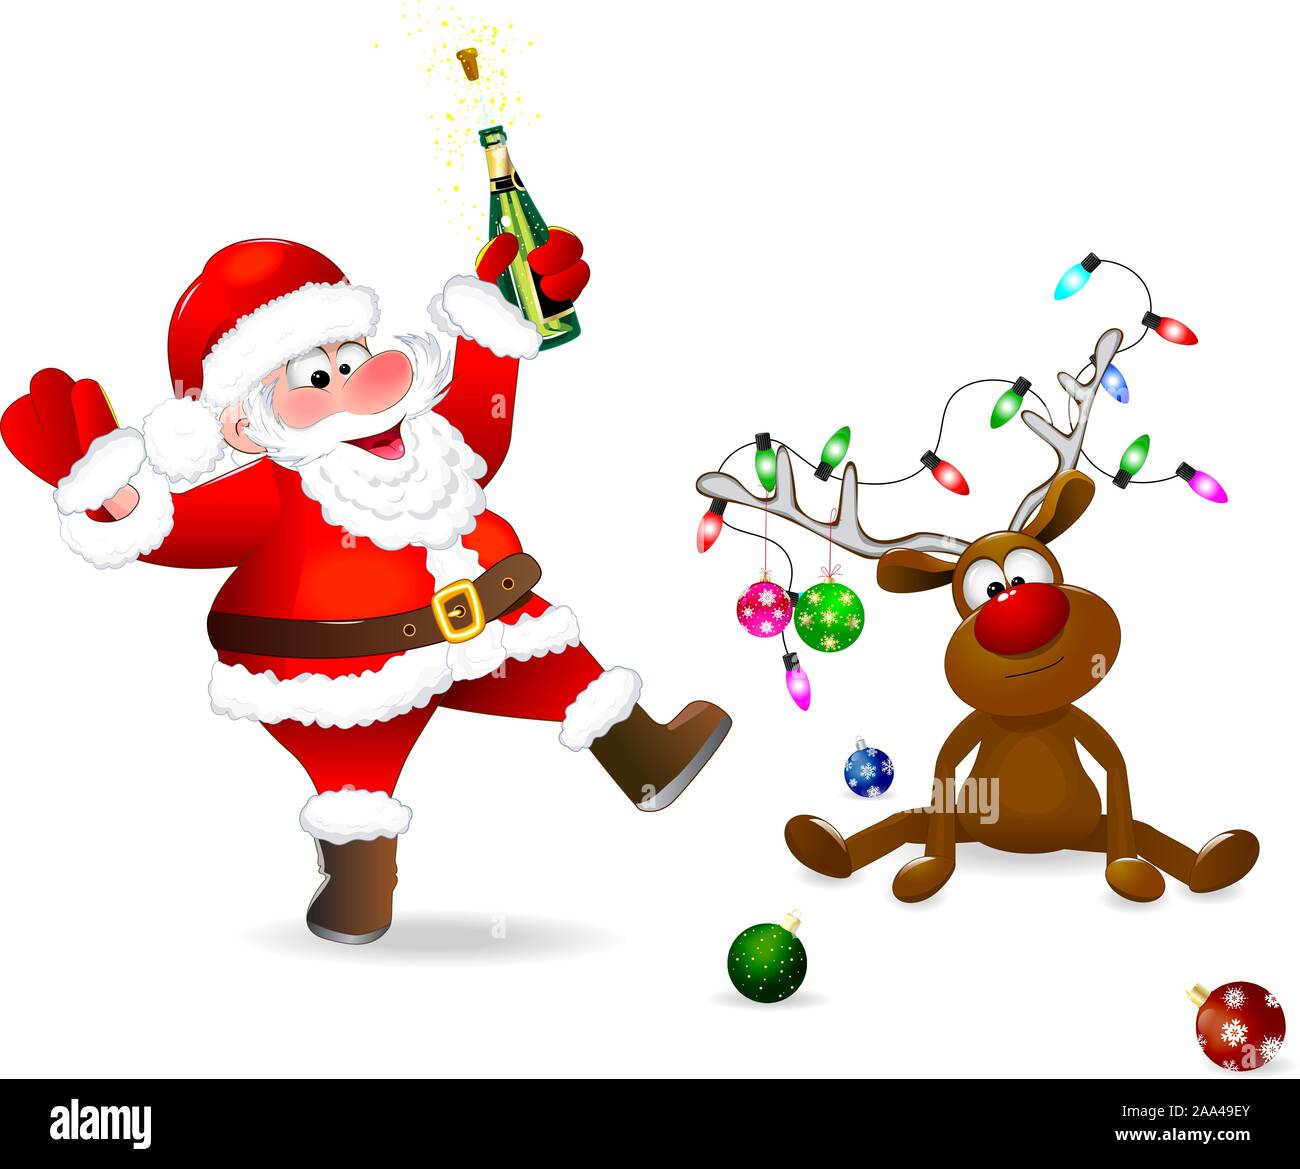 Santa Claus mit einer Flasche in der Hand. Der Hirsch ist mit Weihnachtskugeln und eine Girlande aus Lichtern geschmückt. Santa und Rotwild auf einem weißen Hintergrund. Stock Vektor